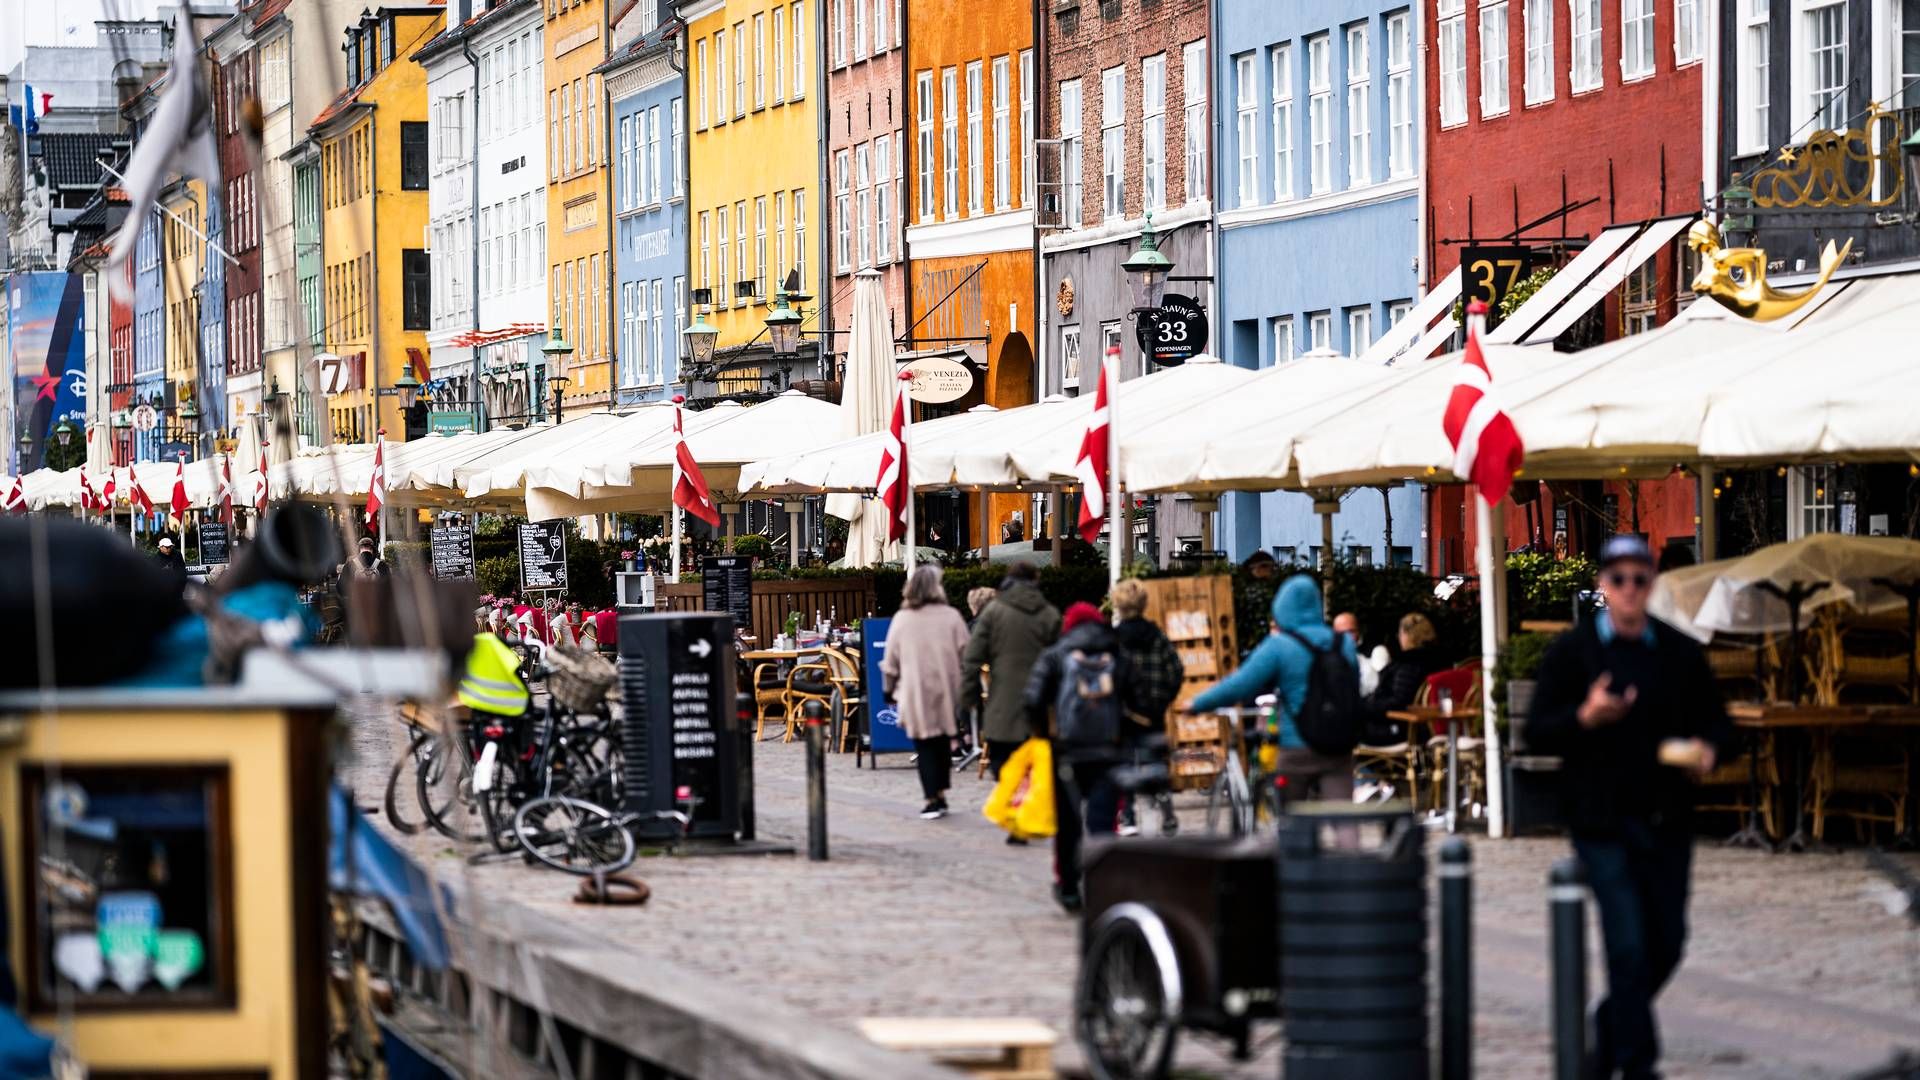 Advokatfirmaet Hafnia, der har kontor i Nyhavn i København, er specialiseret inden for blandt andet forsikring, kontrakter og retssager på shippingområdet. | Foto: Jonas Olufson